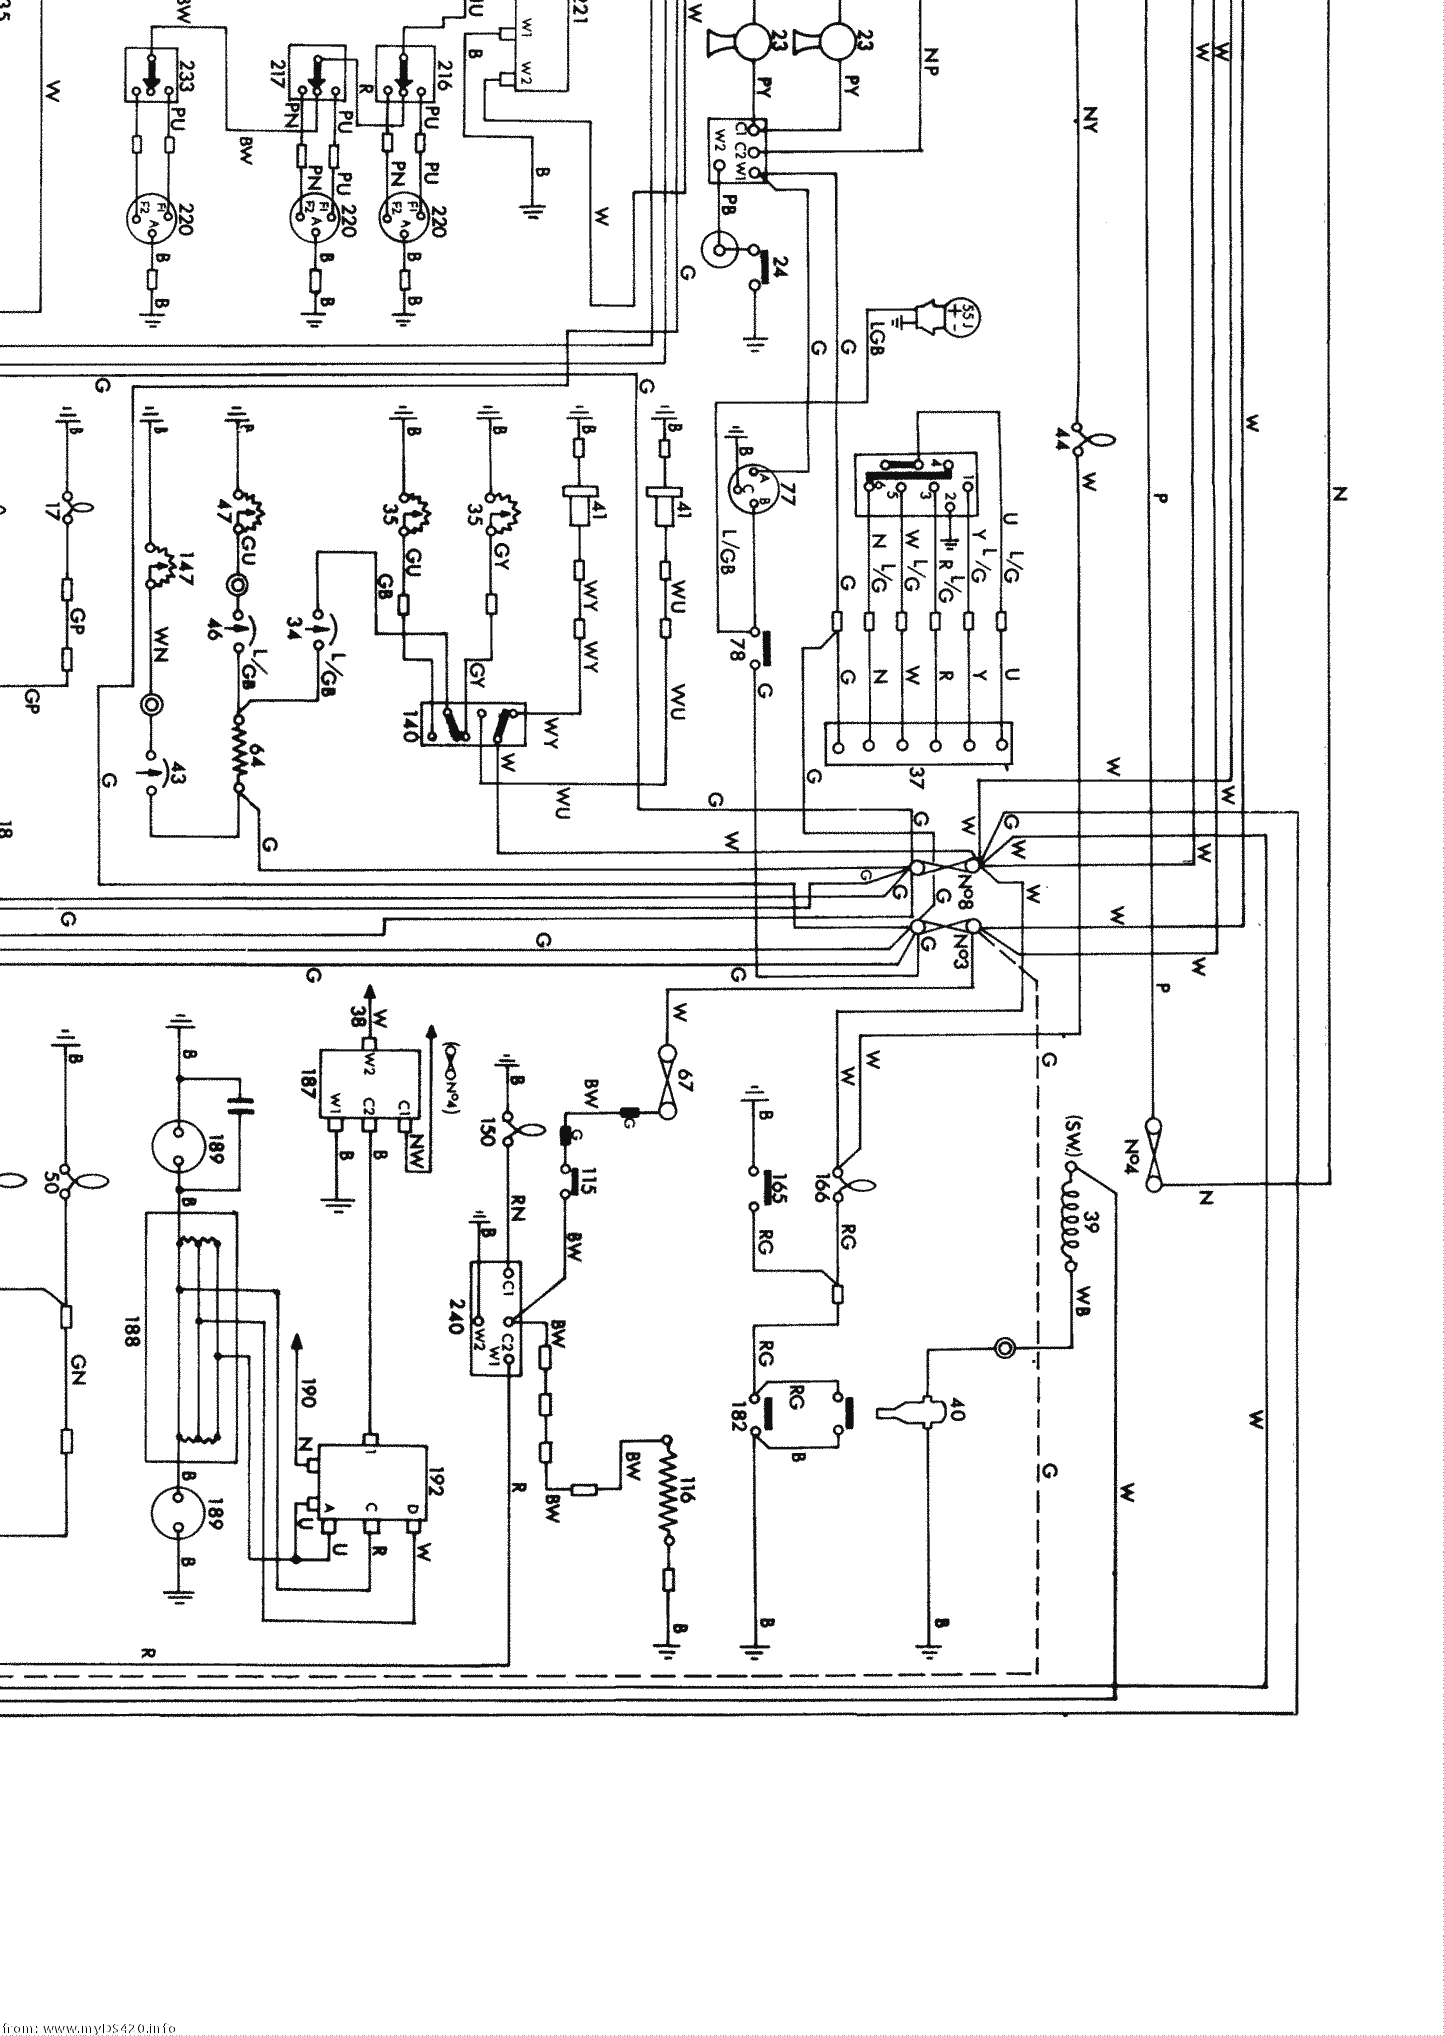 wiring diagram medium res. A4 NE (1970)